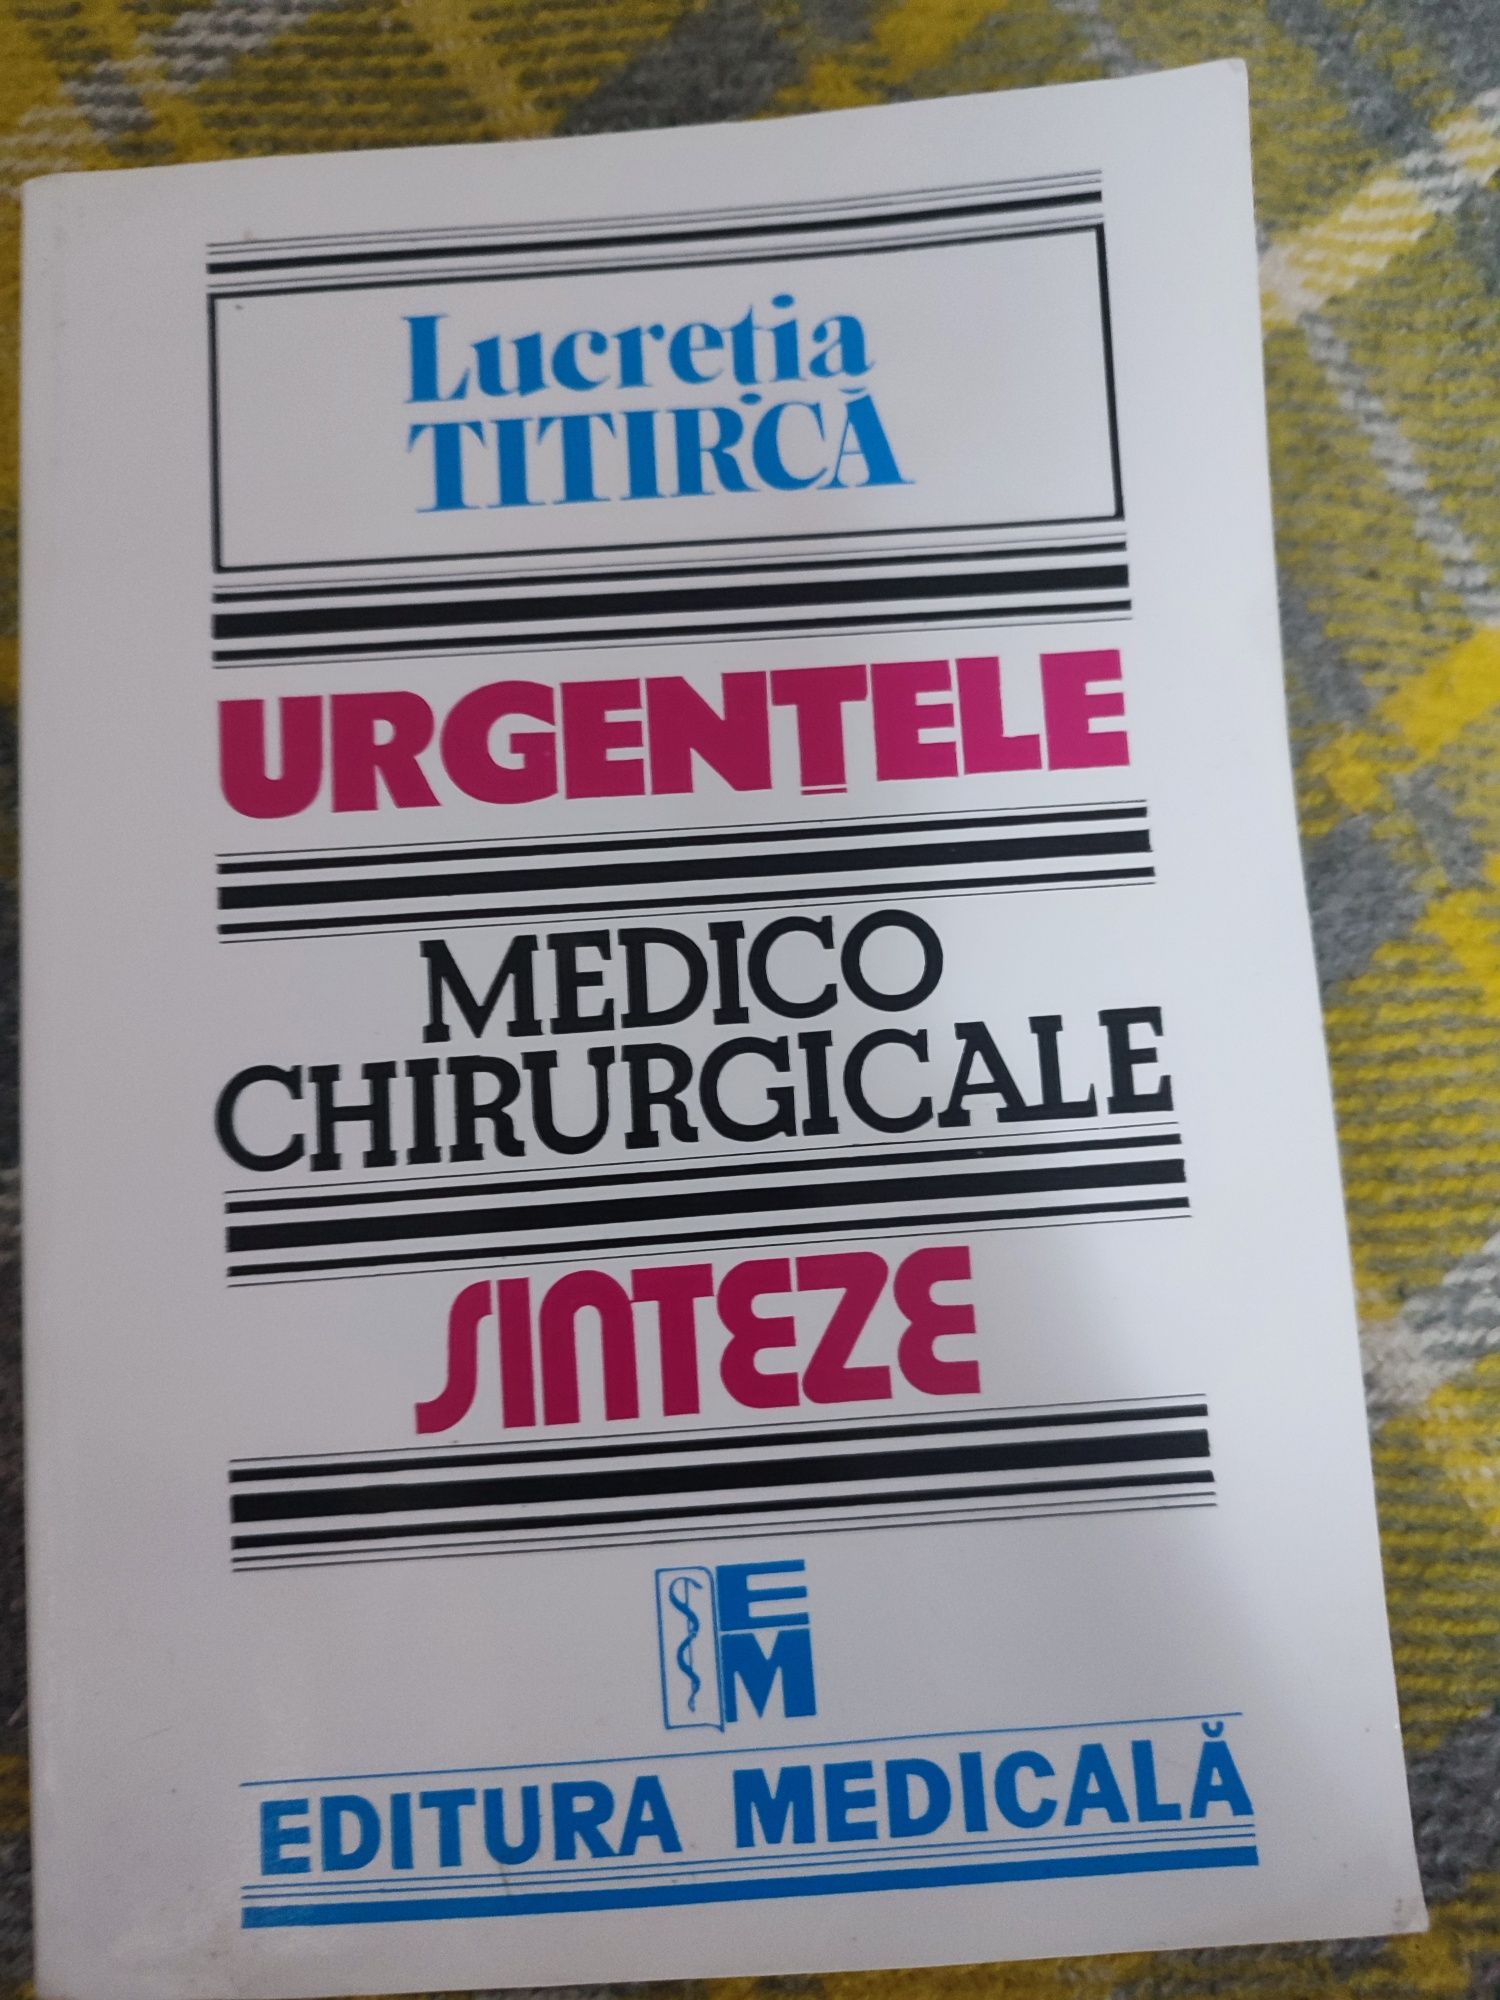 Lucretia Titirca medico chirurgicale urgentele